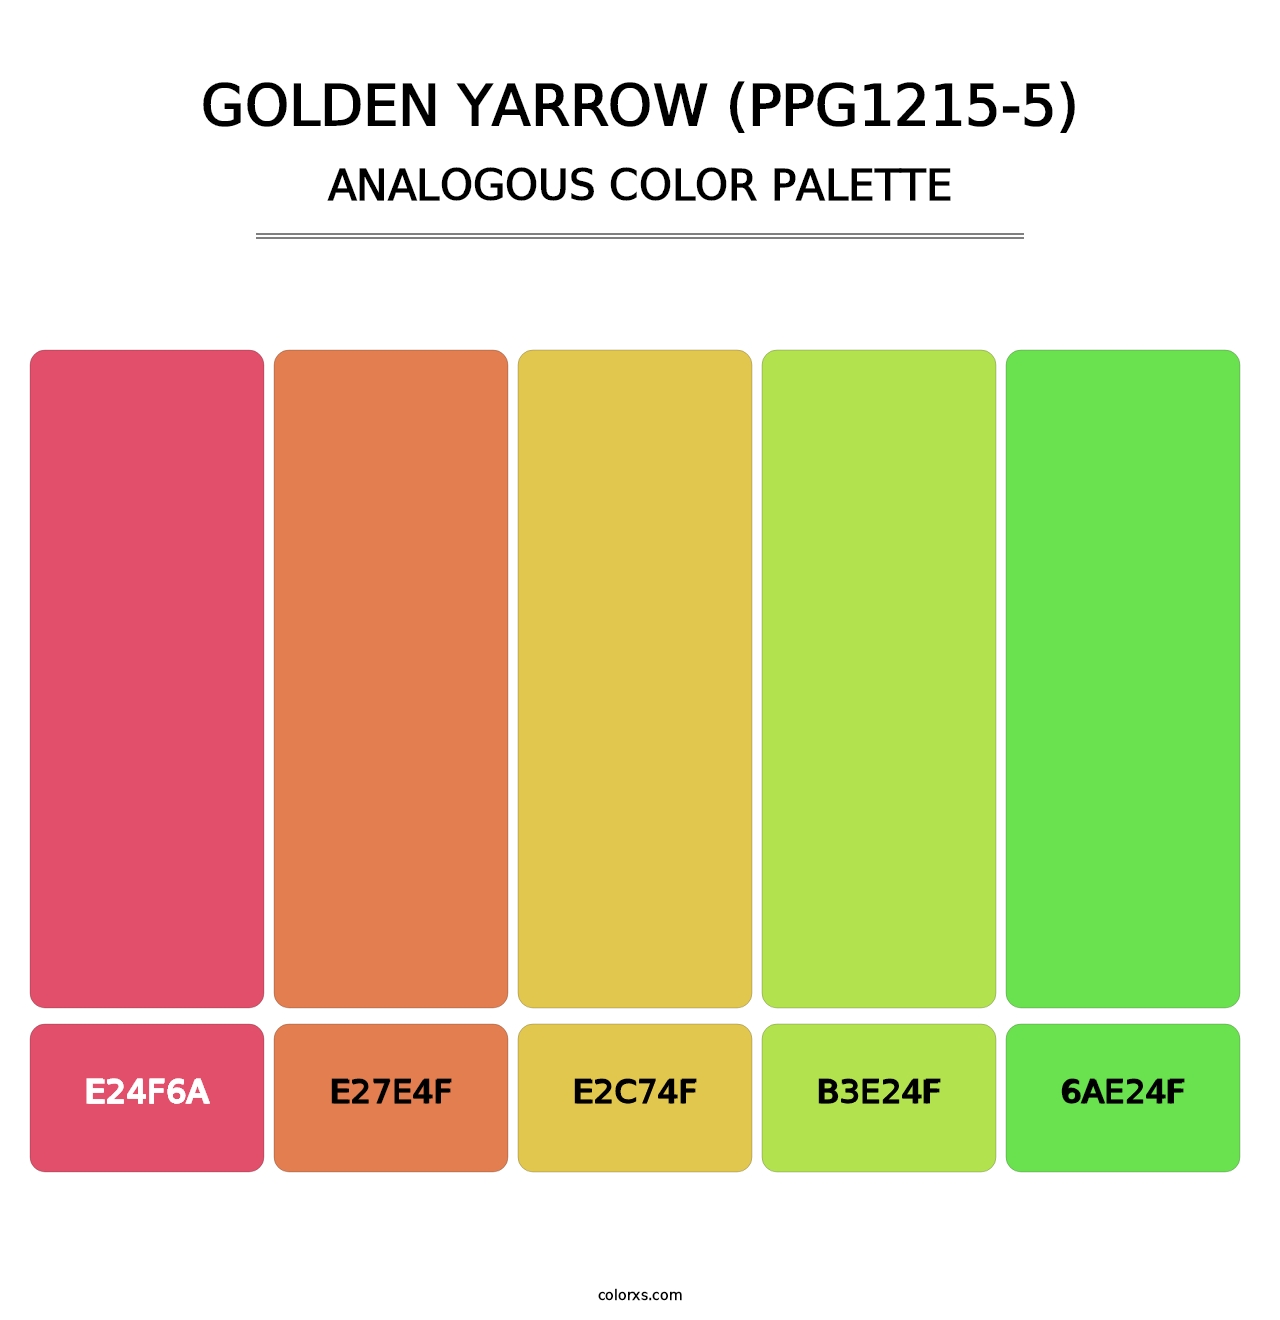 Golden Yarrow (PPG1215-5) - Analogous Color Palette